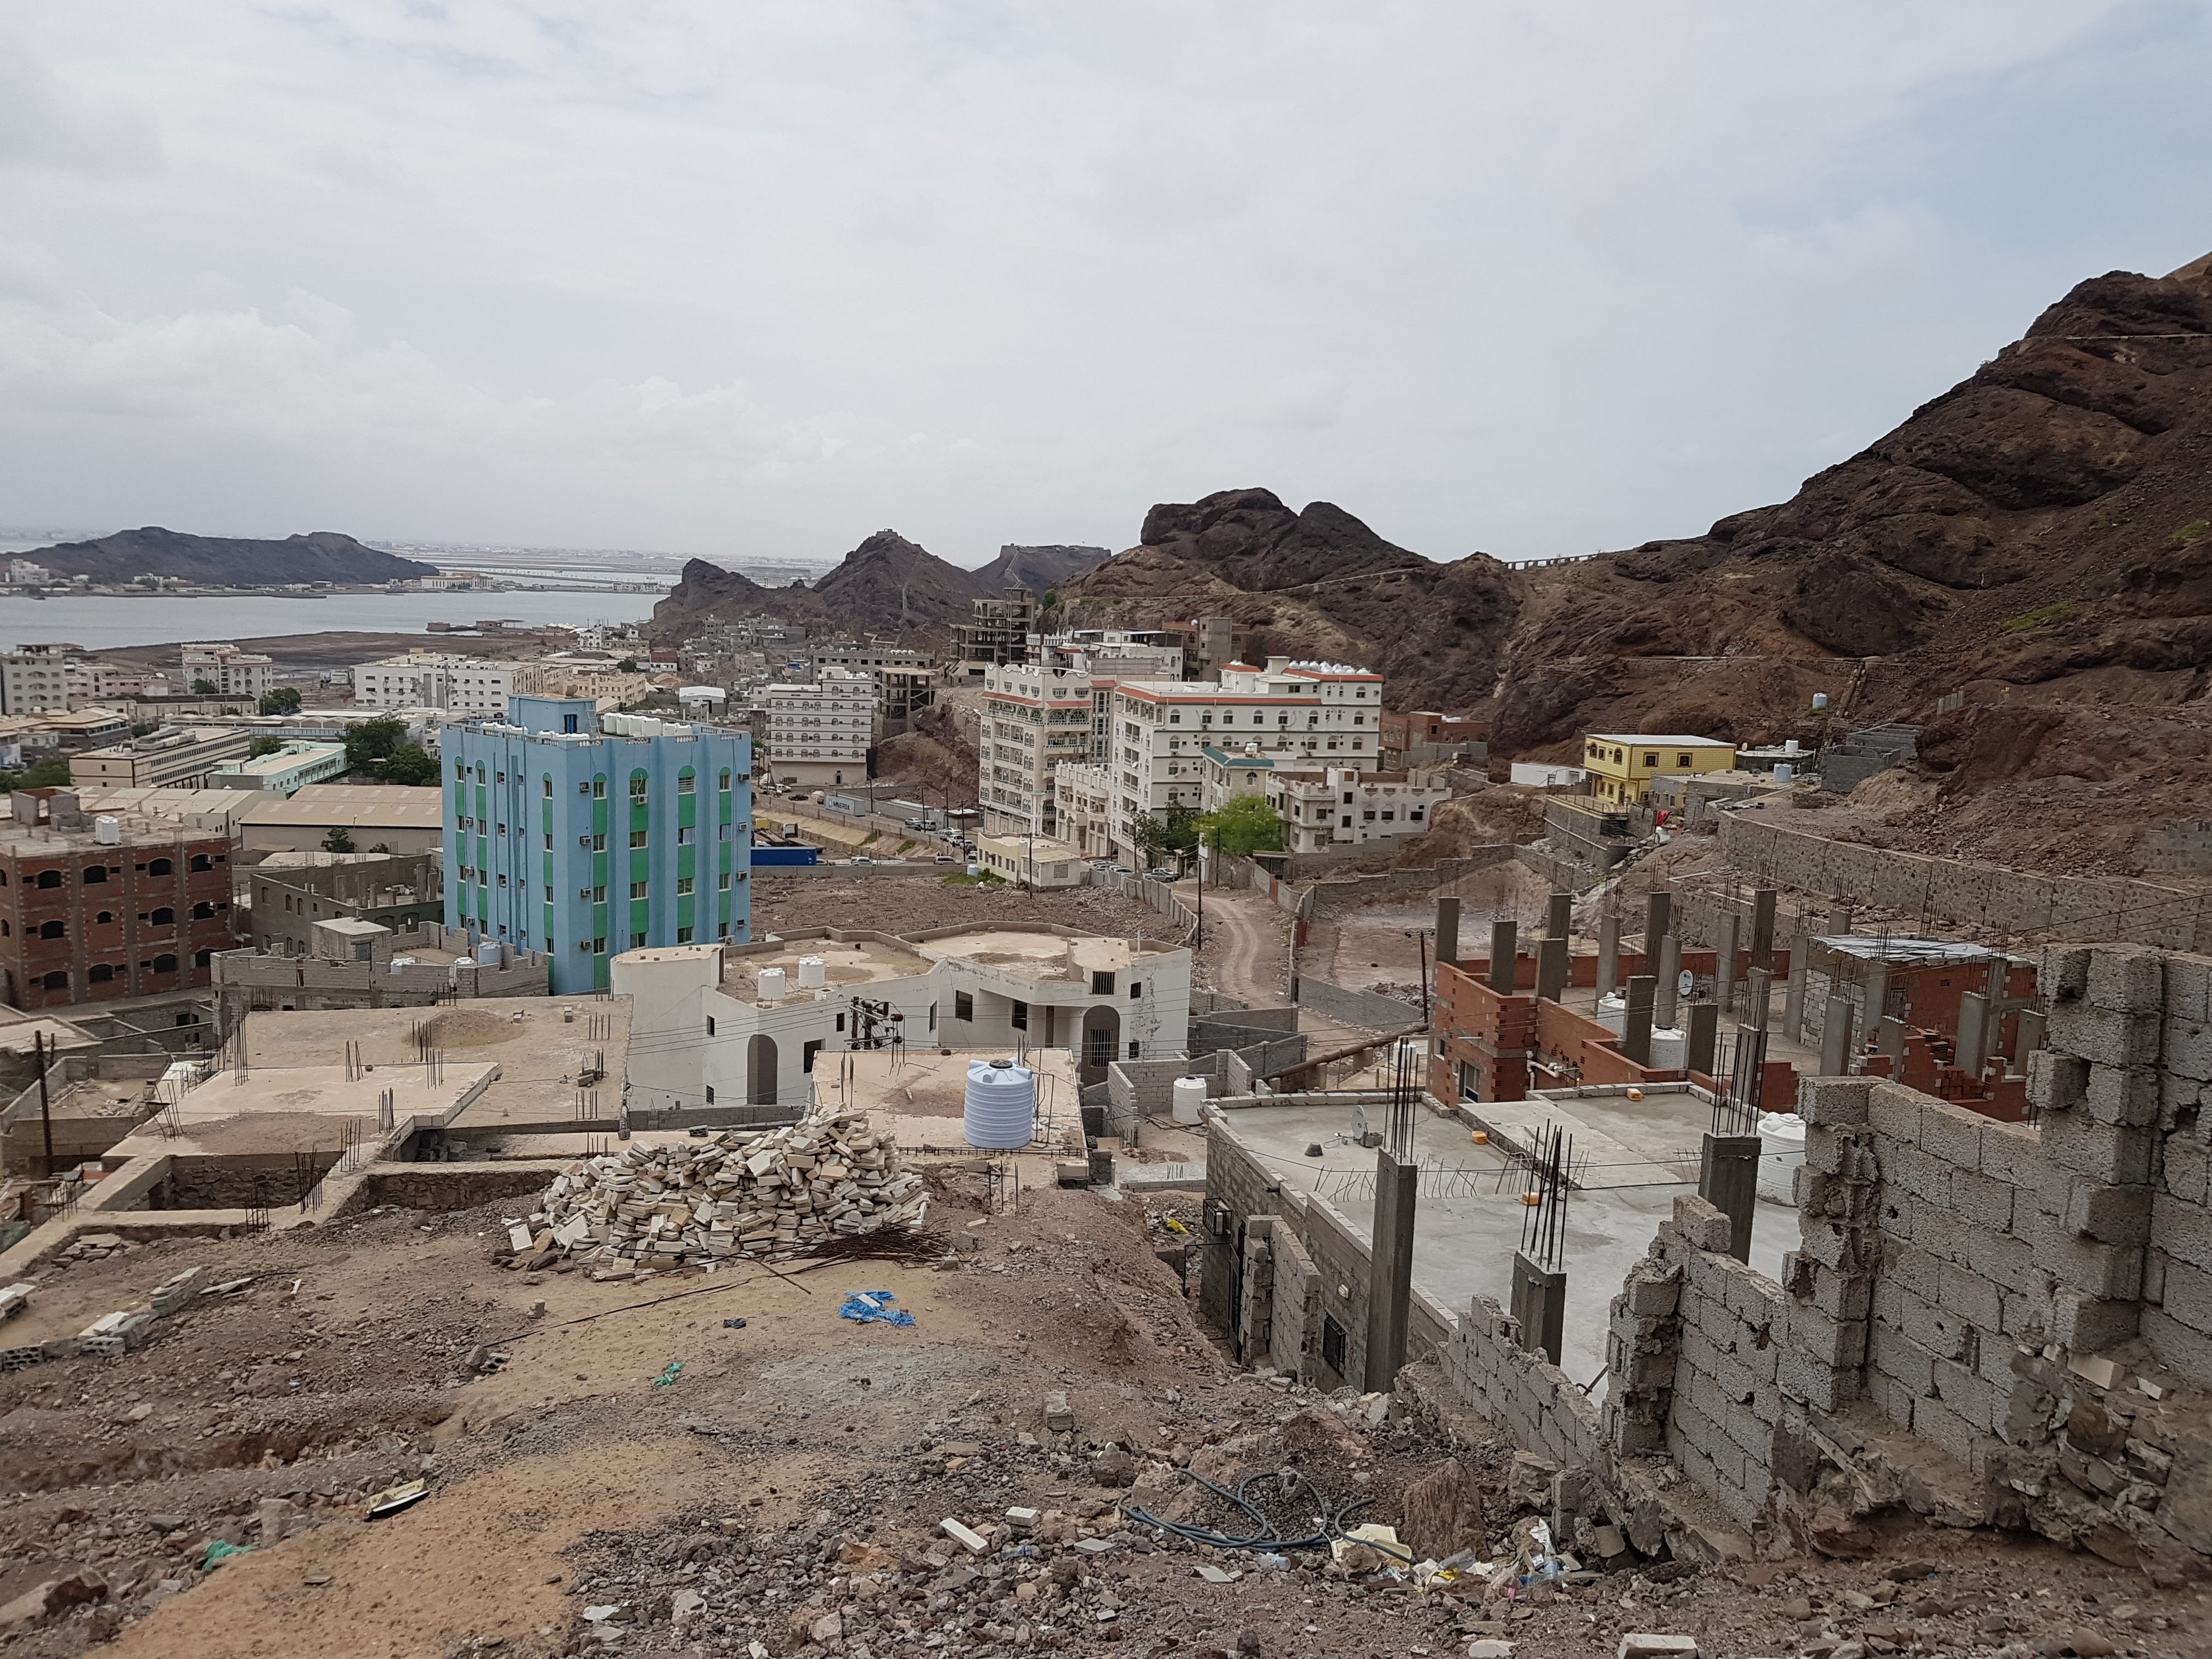 Building construction in Aden city, Yemen